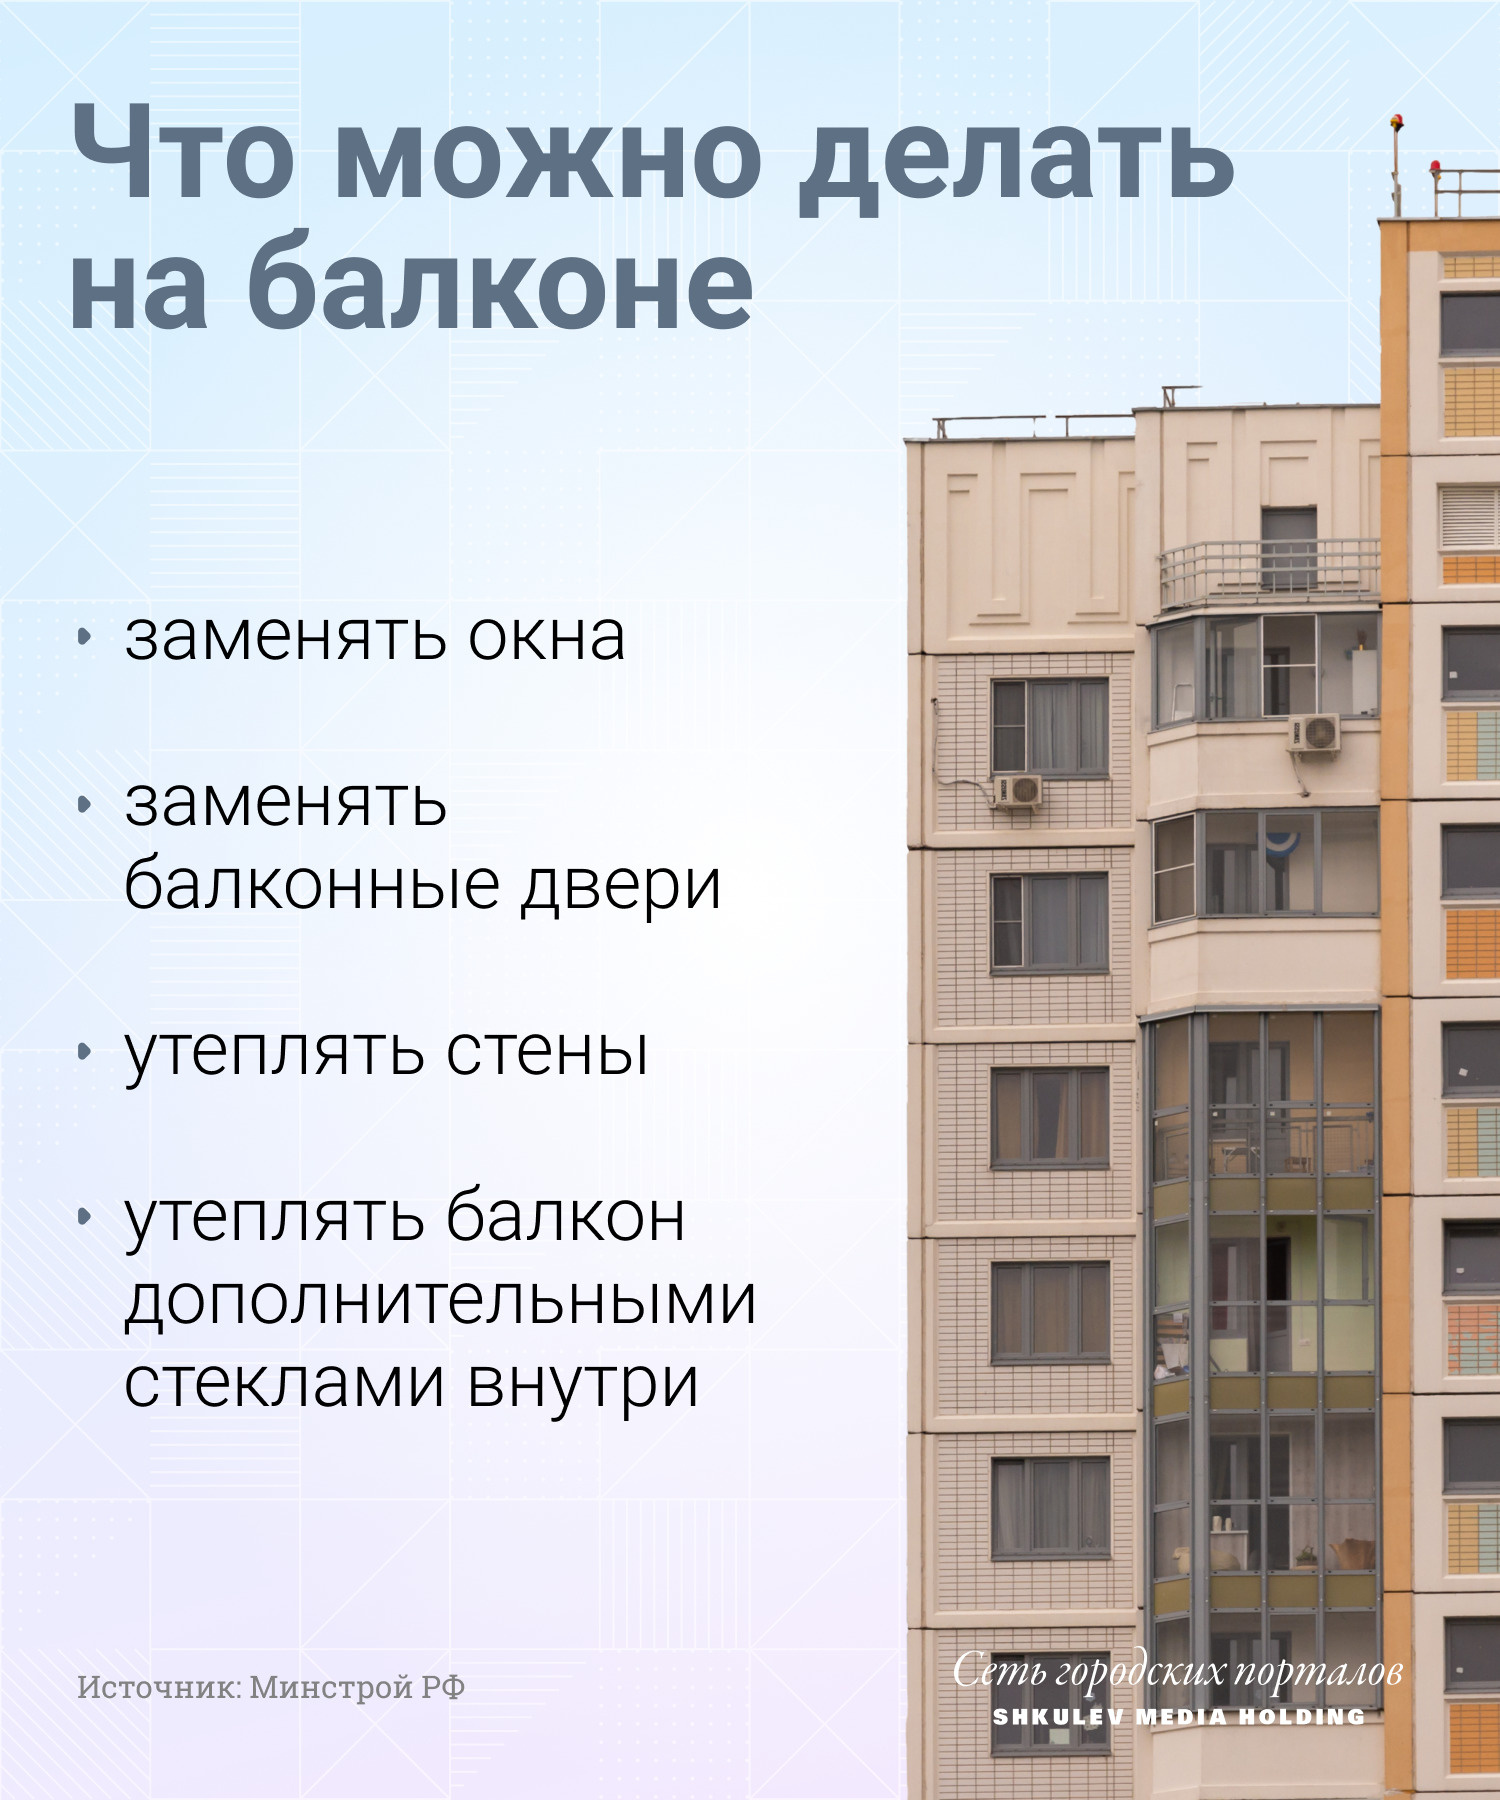 Штрафы за остекление балконов, что можно и нельзя делать на балконе или  лоджии по закону - 2 марта 2022 - НГС24